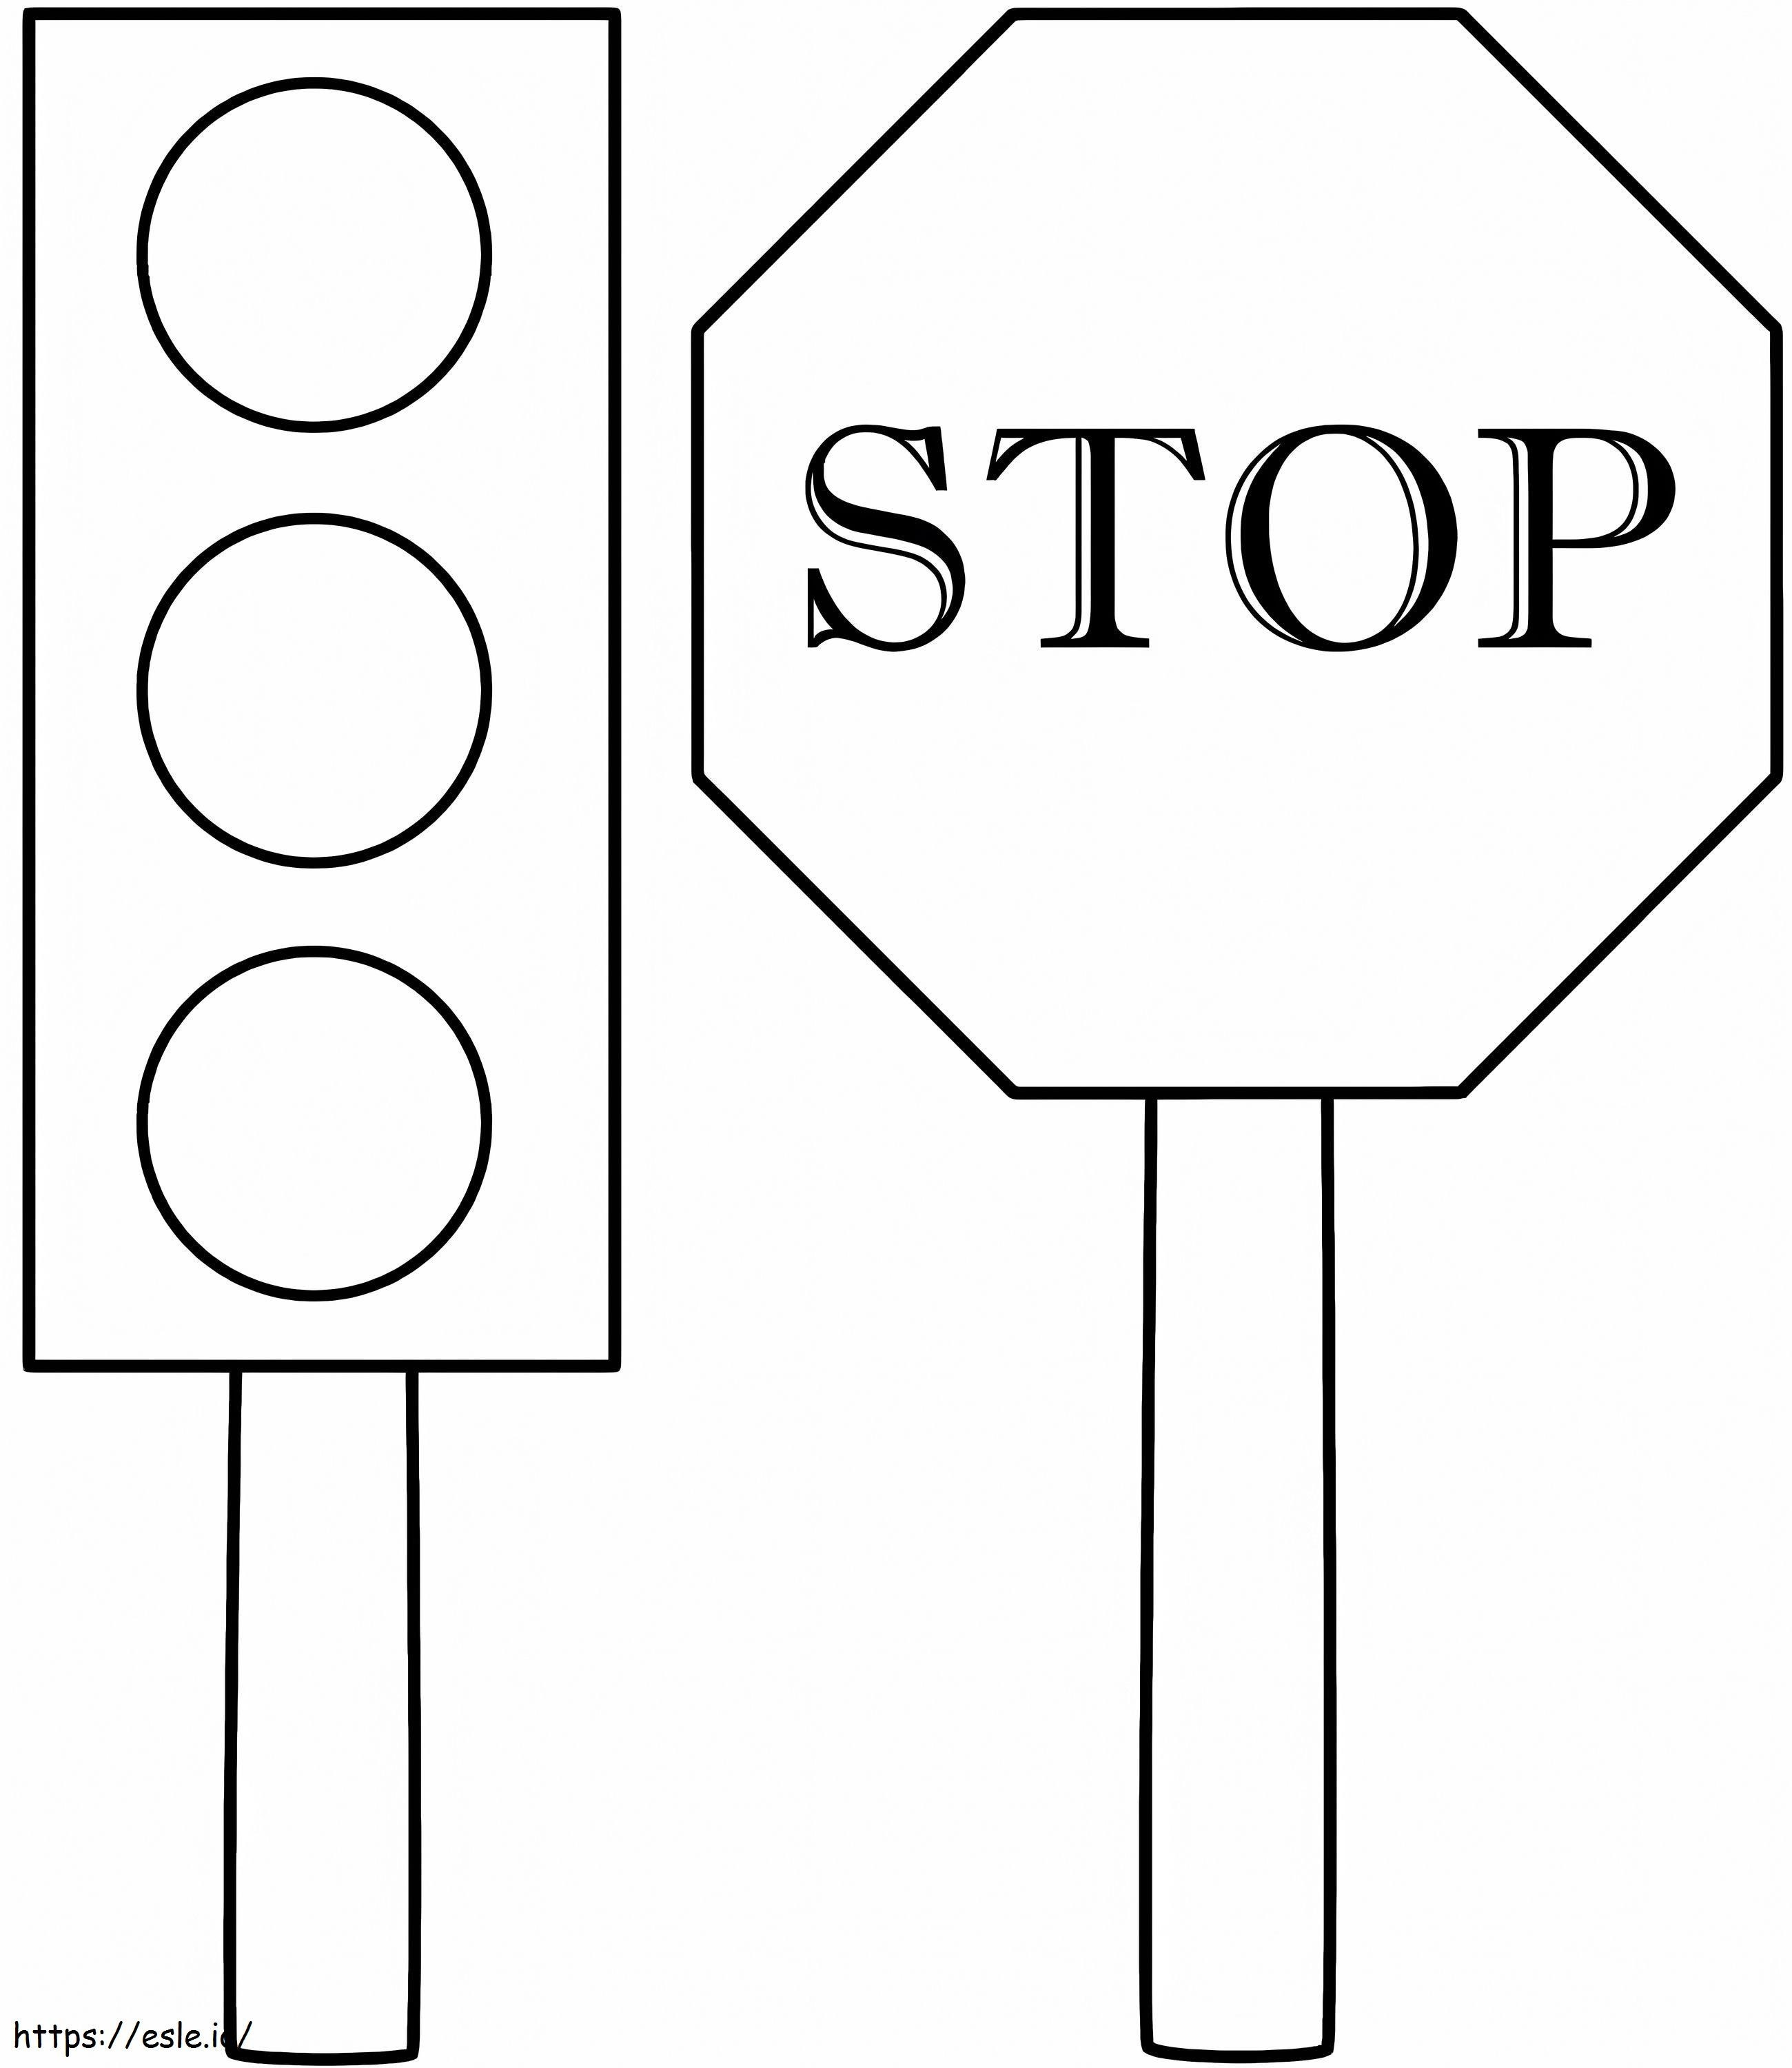 Semáforo y señal de stop para colorear